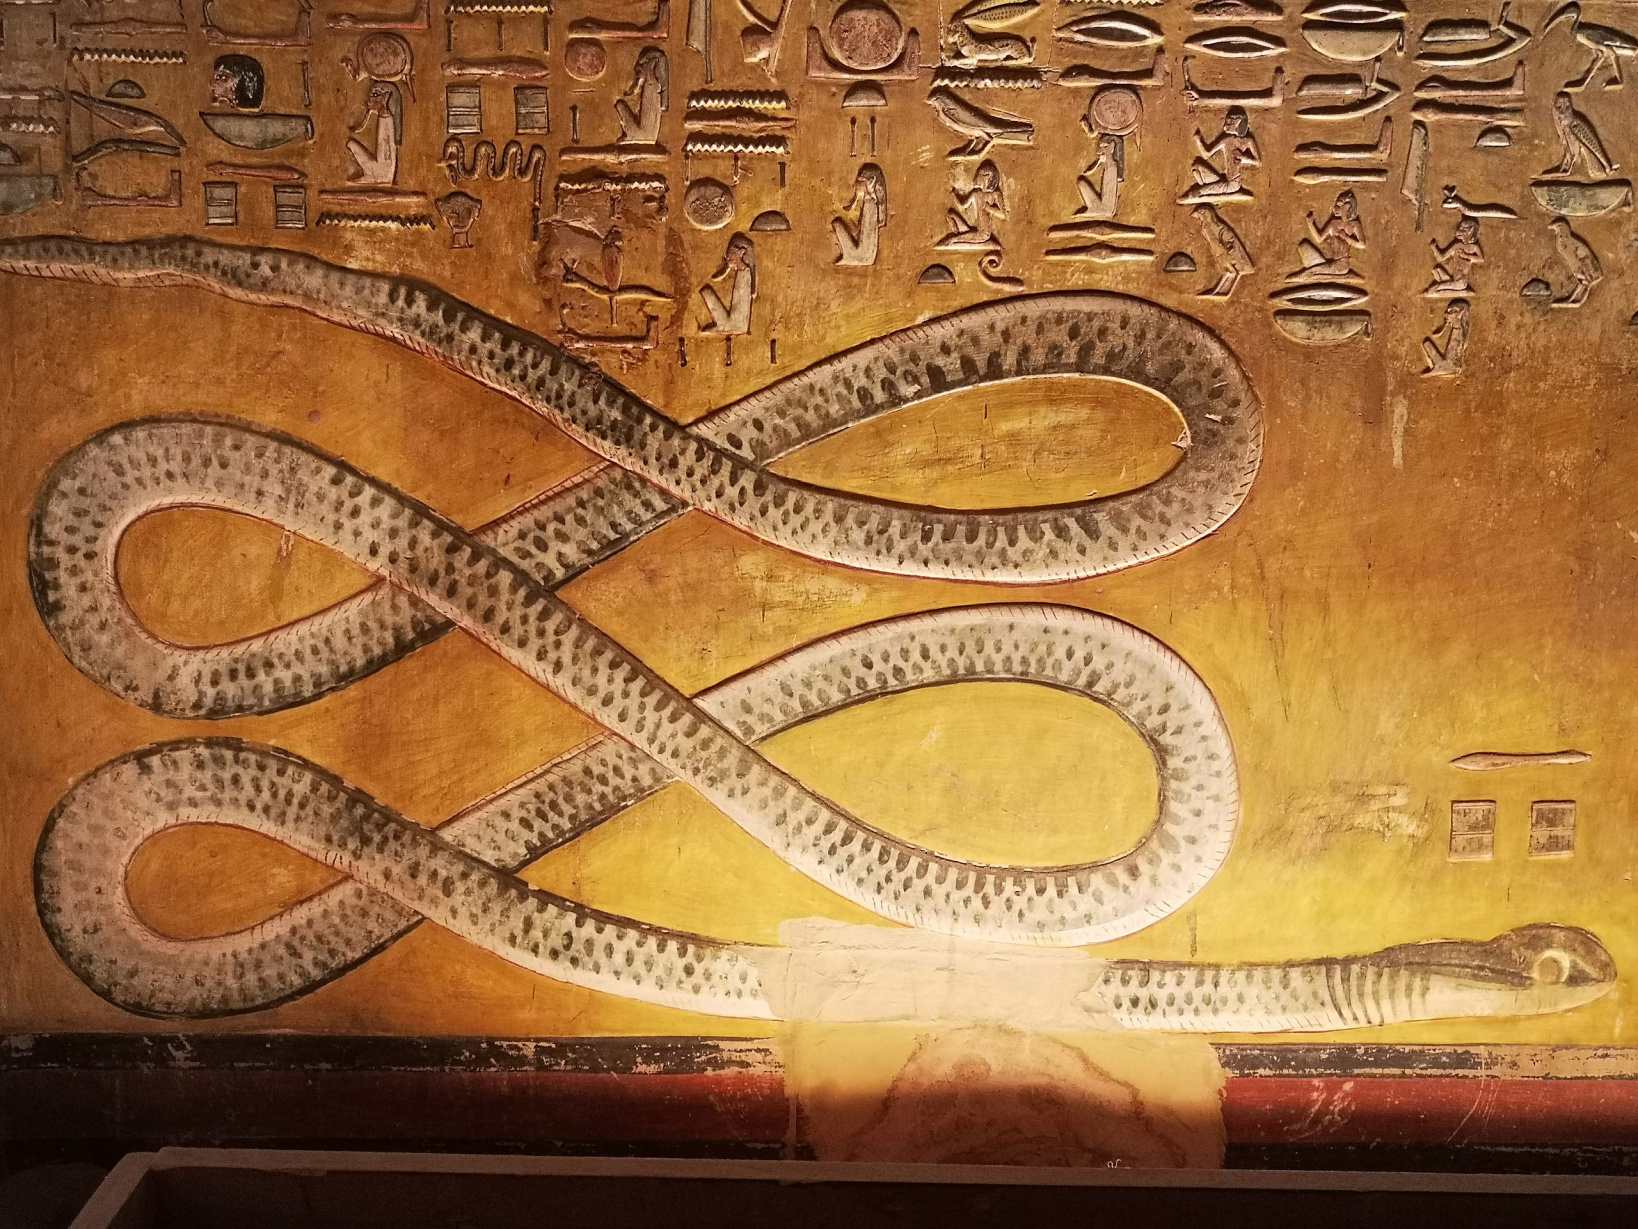 هنر مصر باستان که آپپ را به تصویر می کشد